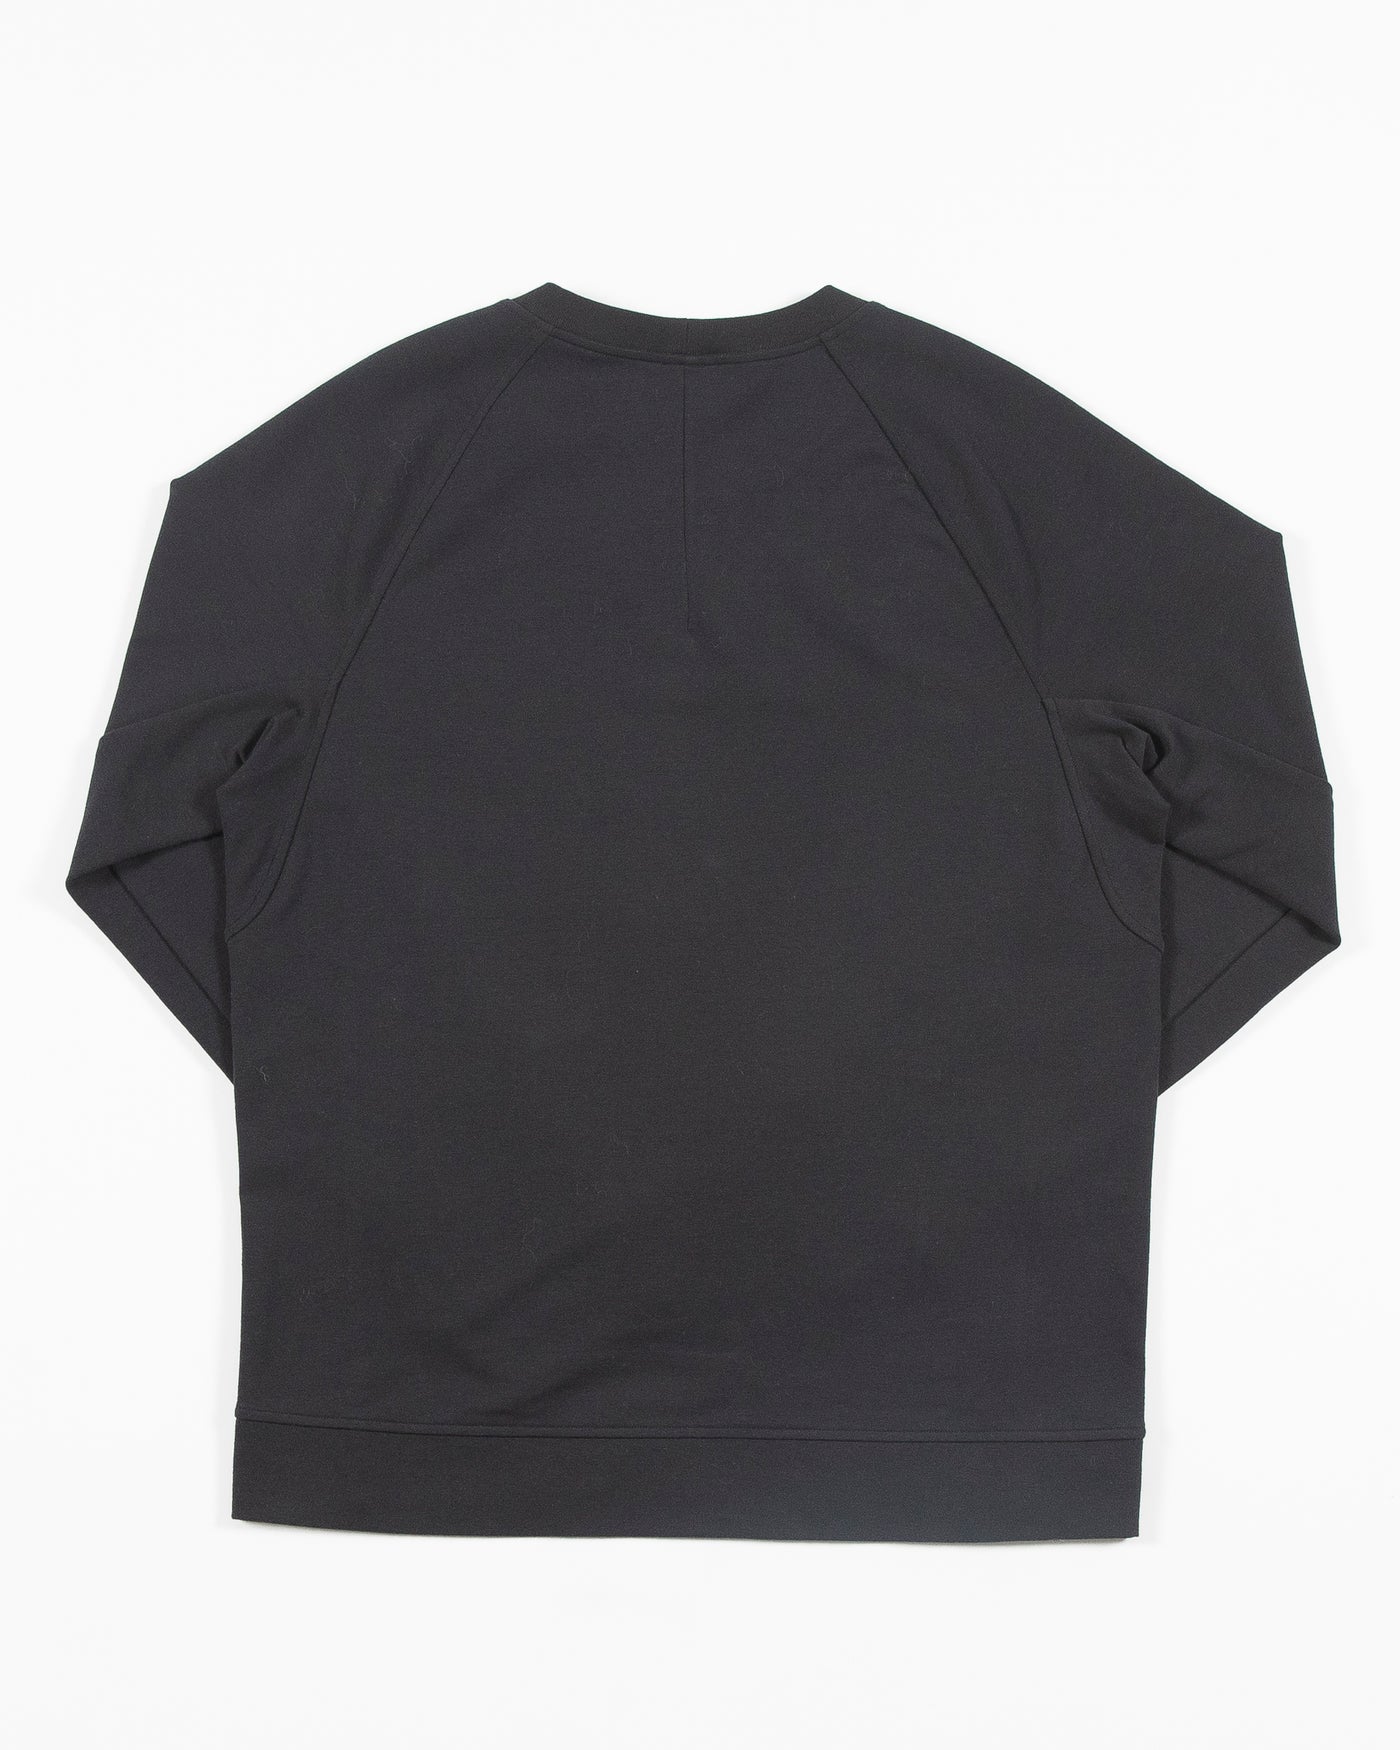 black lululemon crewneck sweater with Chicago Blackhawks primary logo on left chest - back lay flat